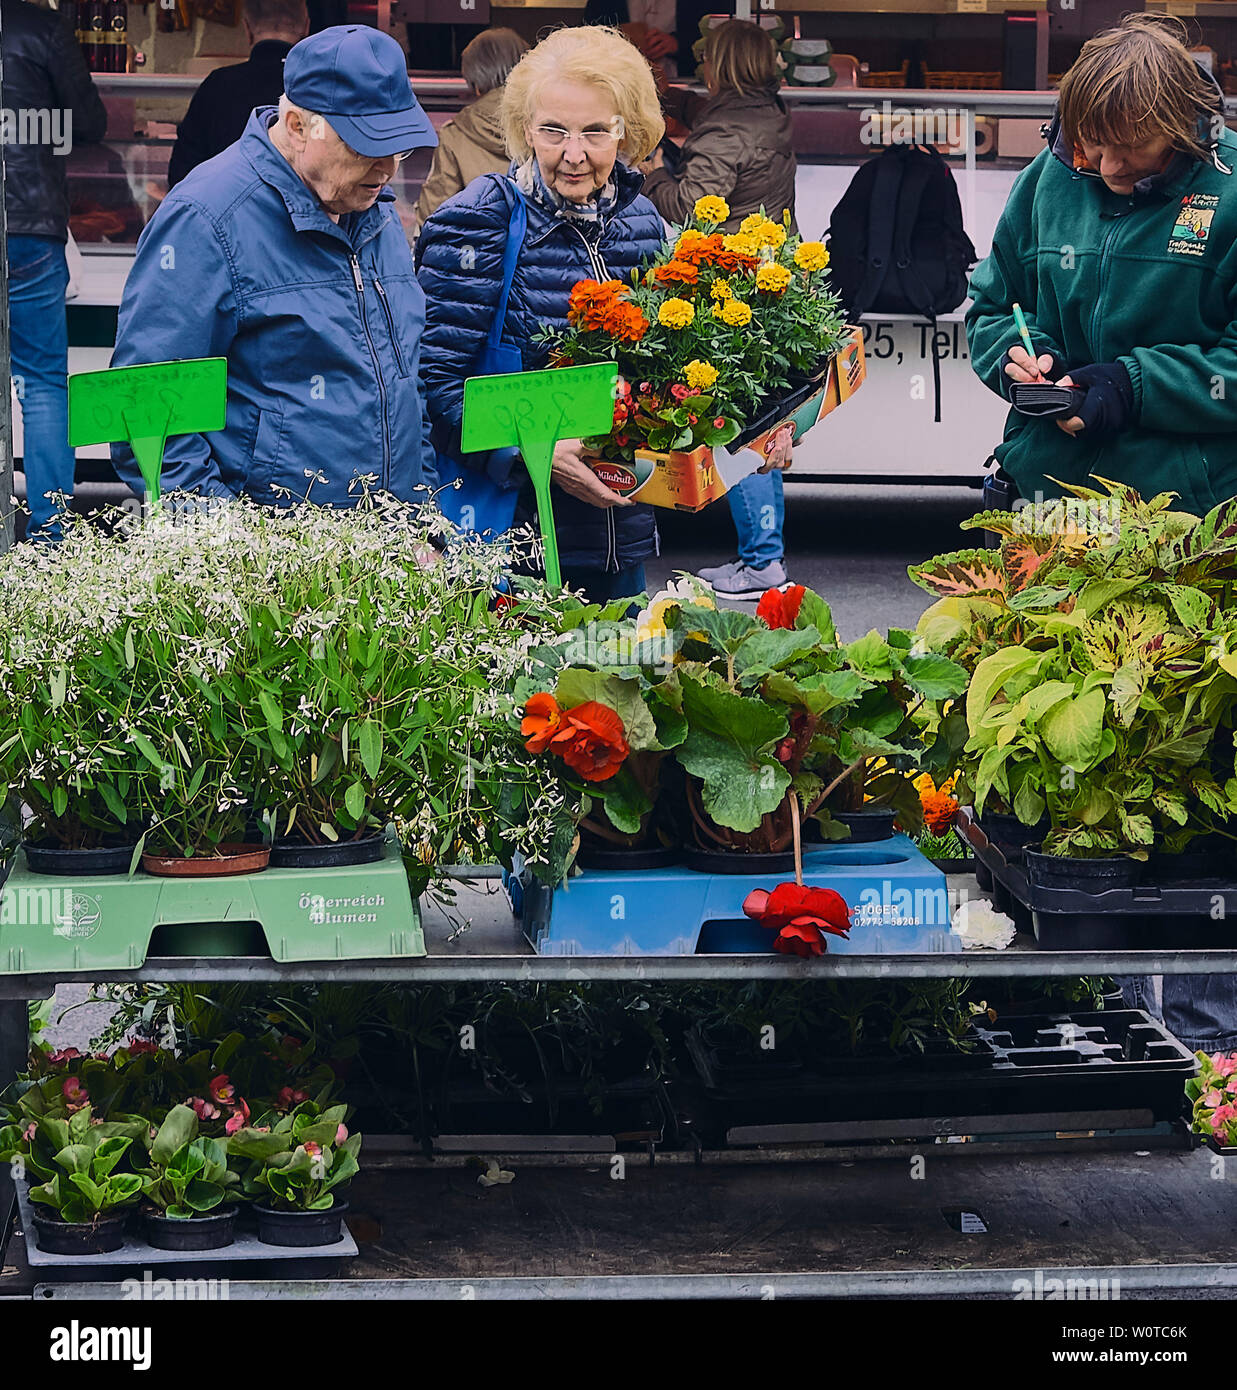 St. Pölten, Niederösterreich, Österreich, Wochenmarkt. Bild zeigt Wochenmarktbesucher beim Blumenkauf. Stock Photo